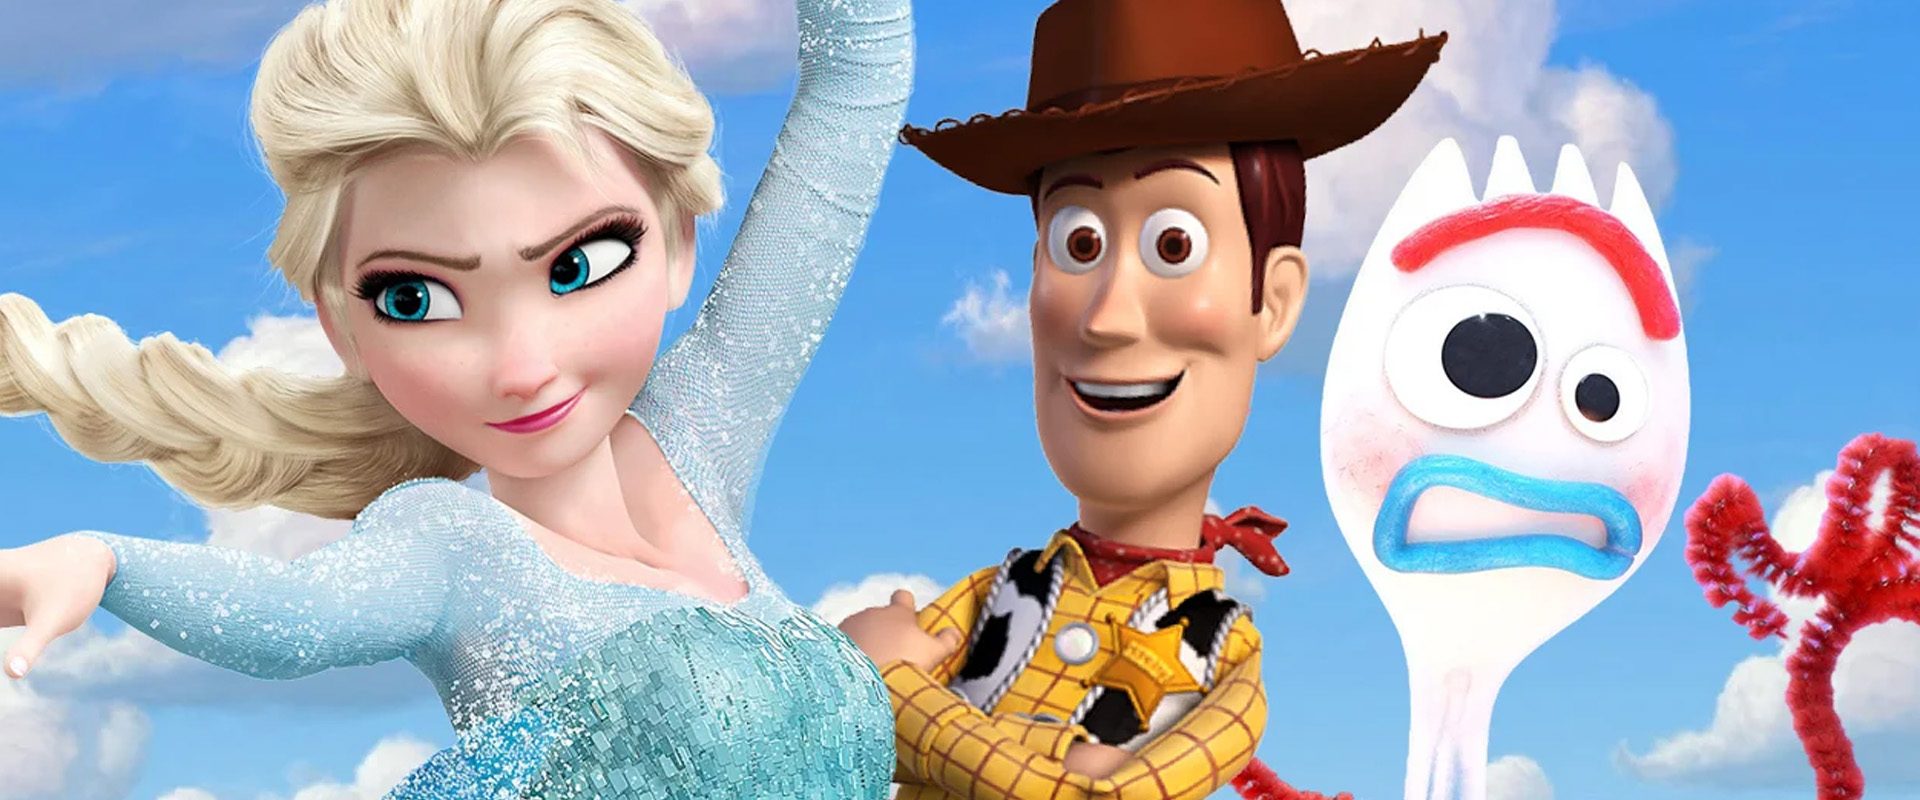 SOUL | Disney anuncia nova animação da Pixar para 2020!